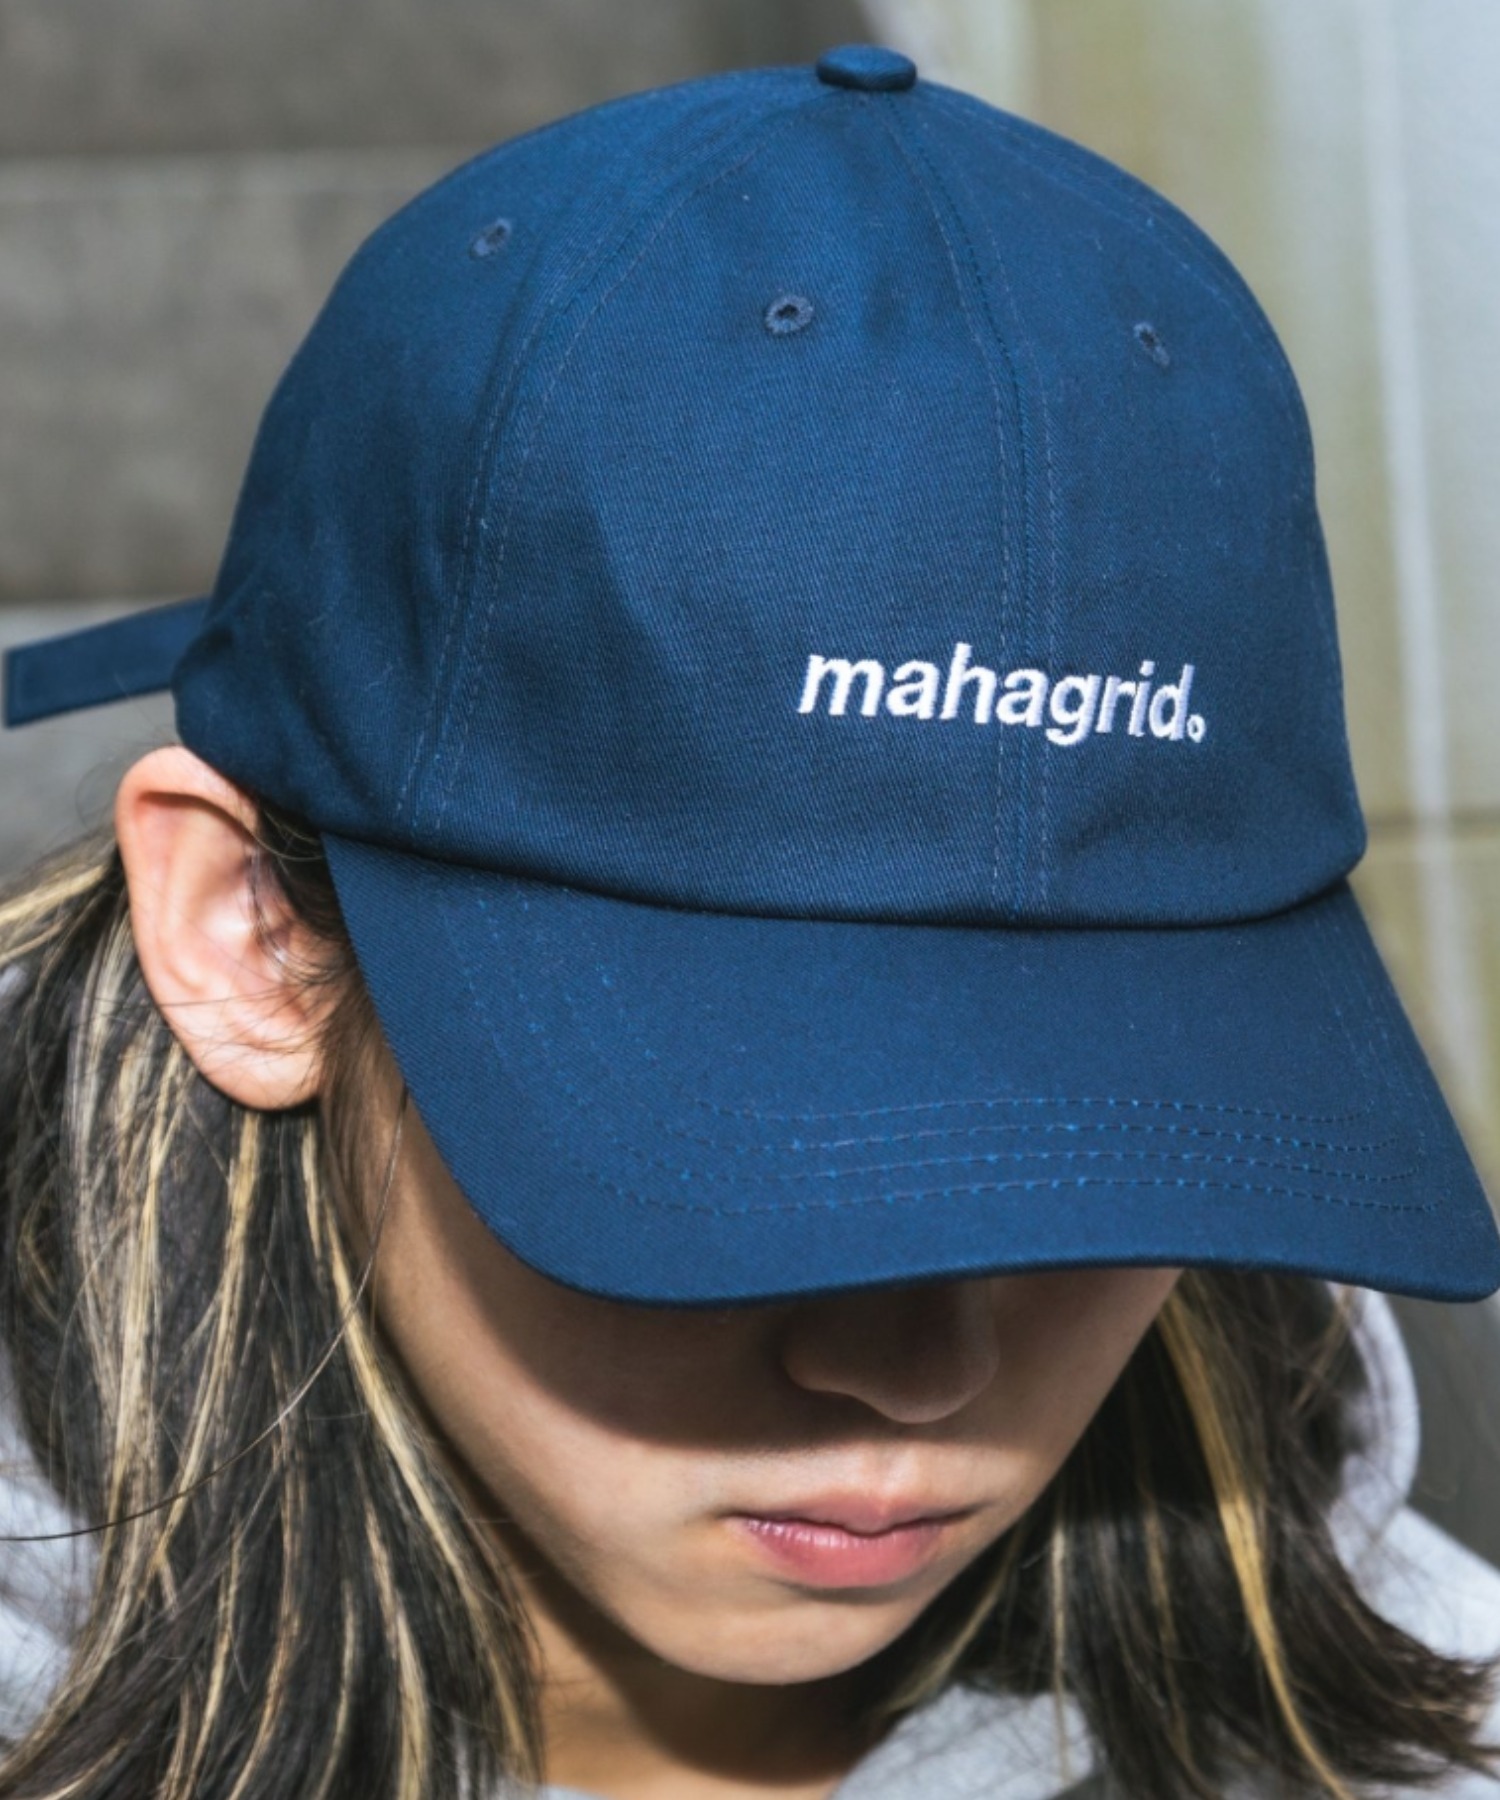 『mahagrid/マハグリッド』BASIC LOGO BALL CAP/ベーシックデザイン ボールキャップ